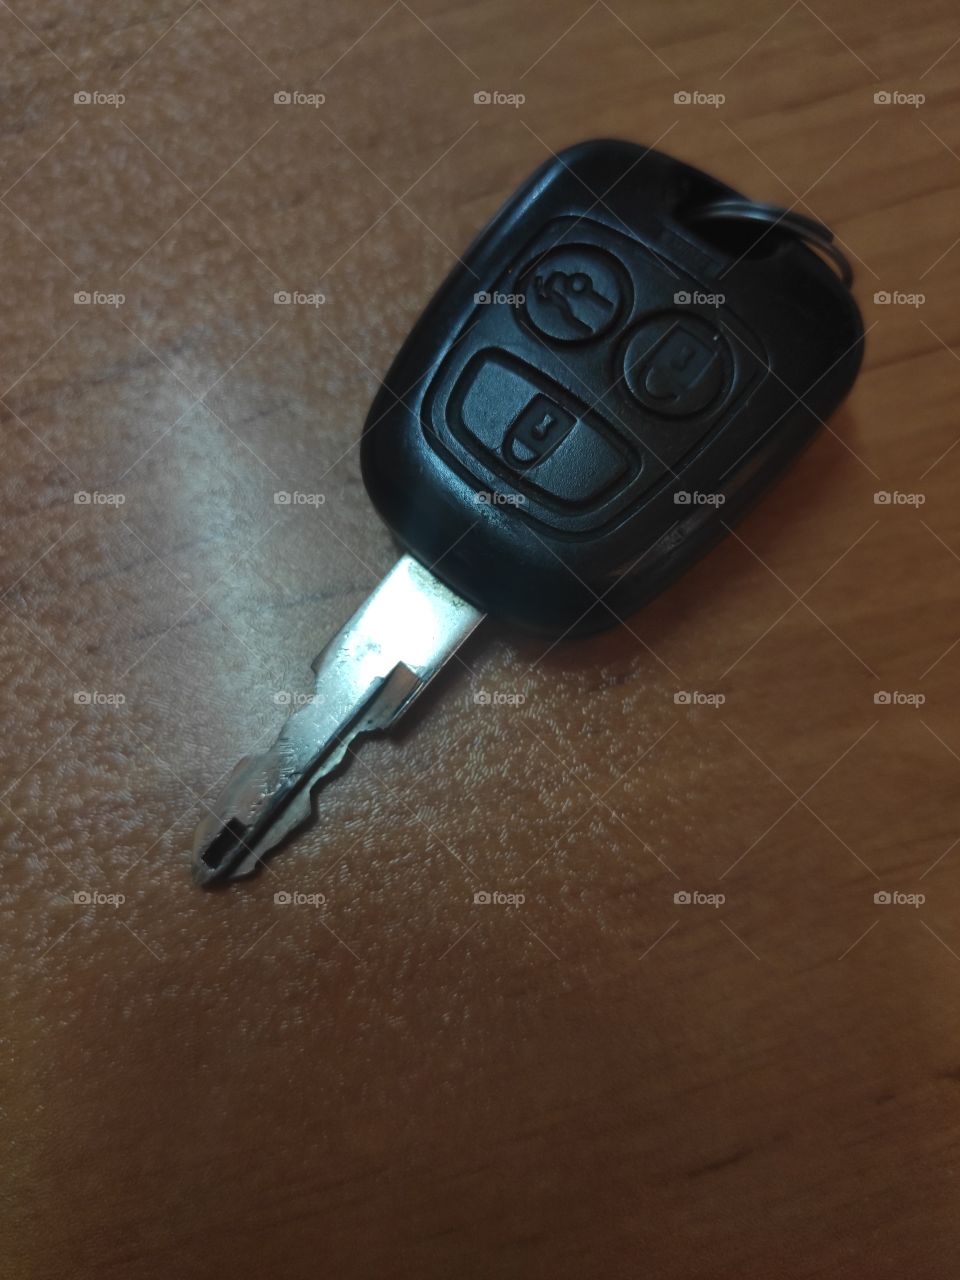 a car key on the table